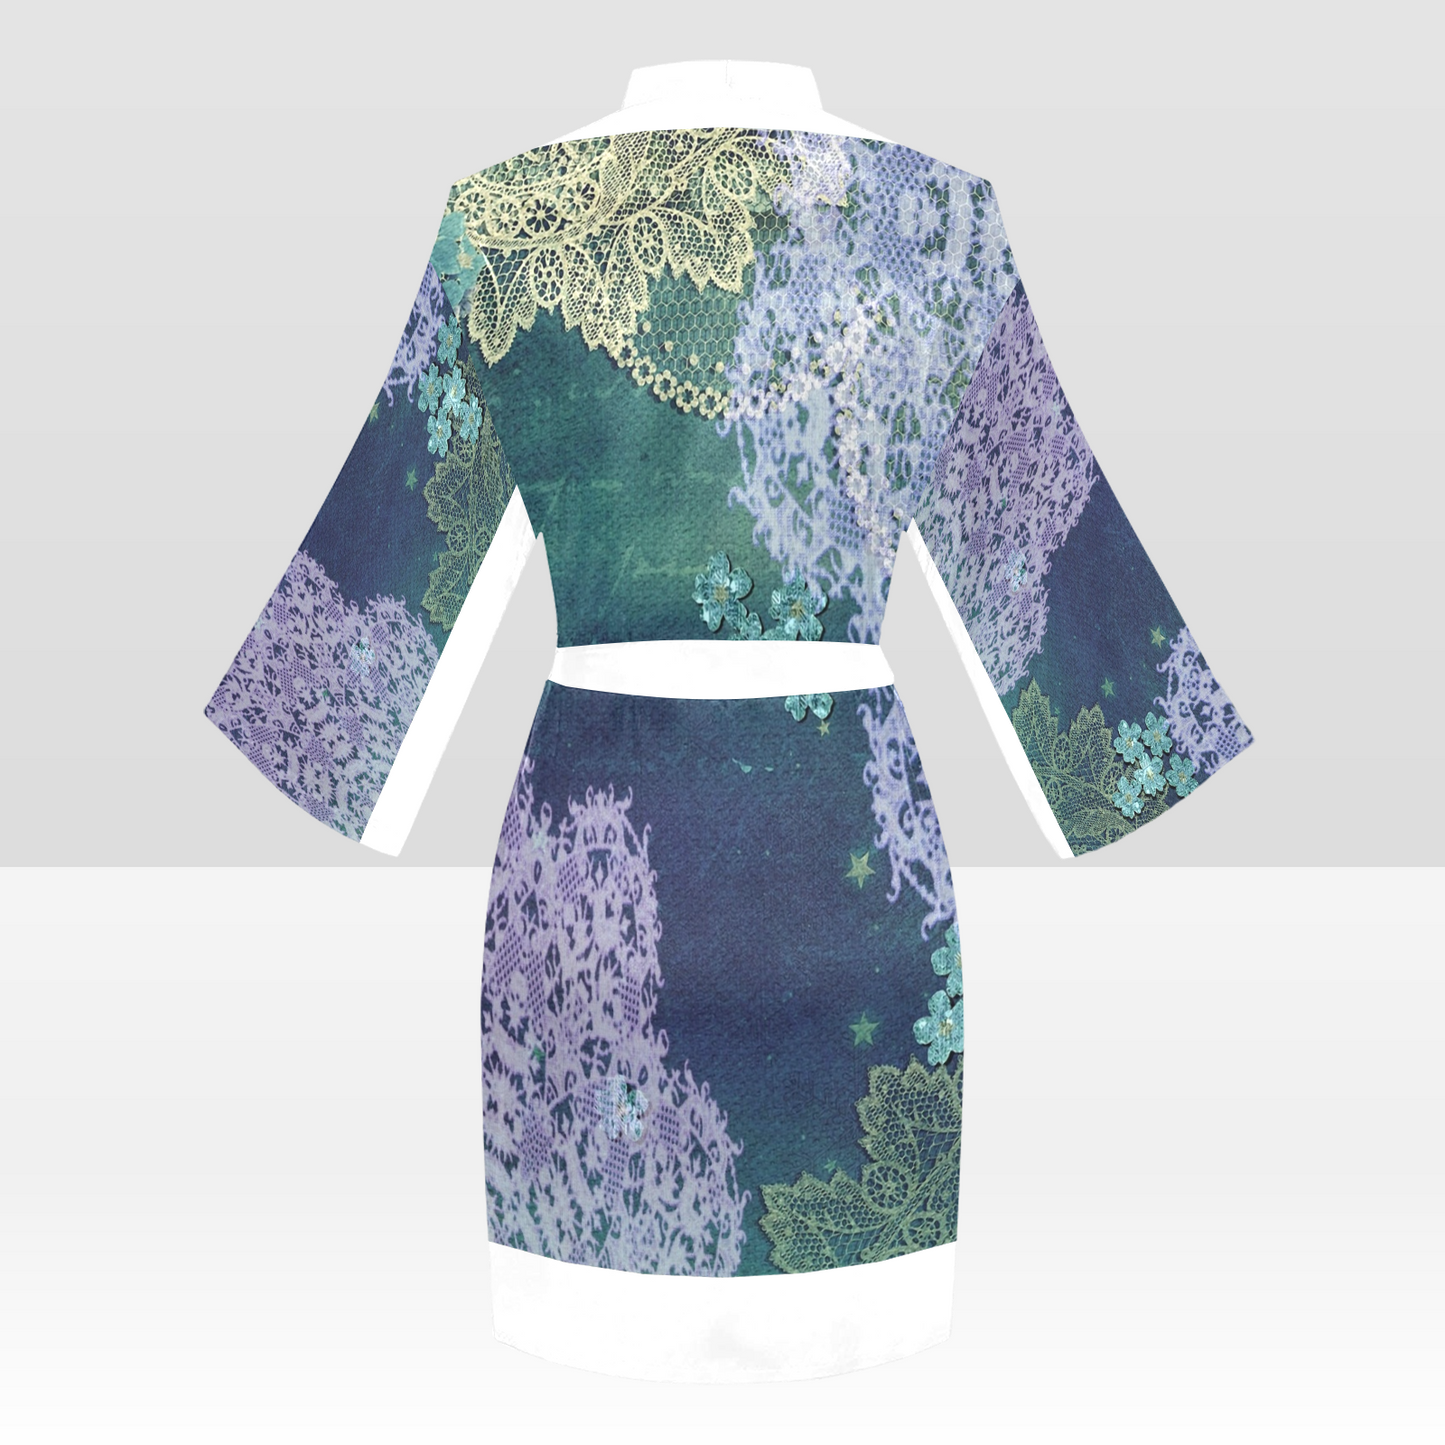 Victorian Lace Kimono Robe, Black or White Trim, Sizes XS to 2XL, Design 05